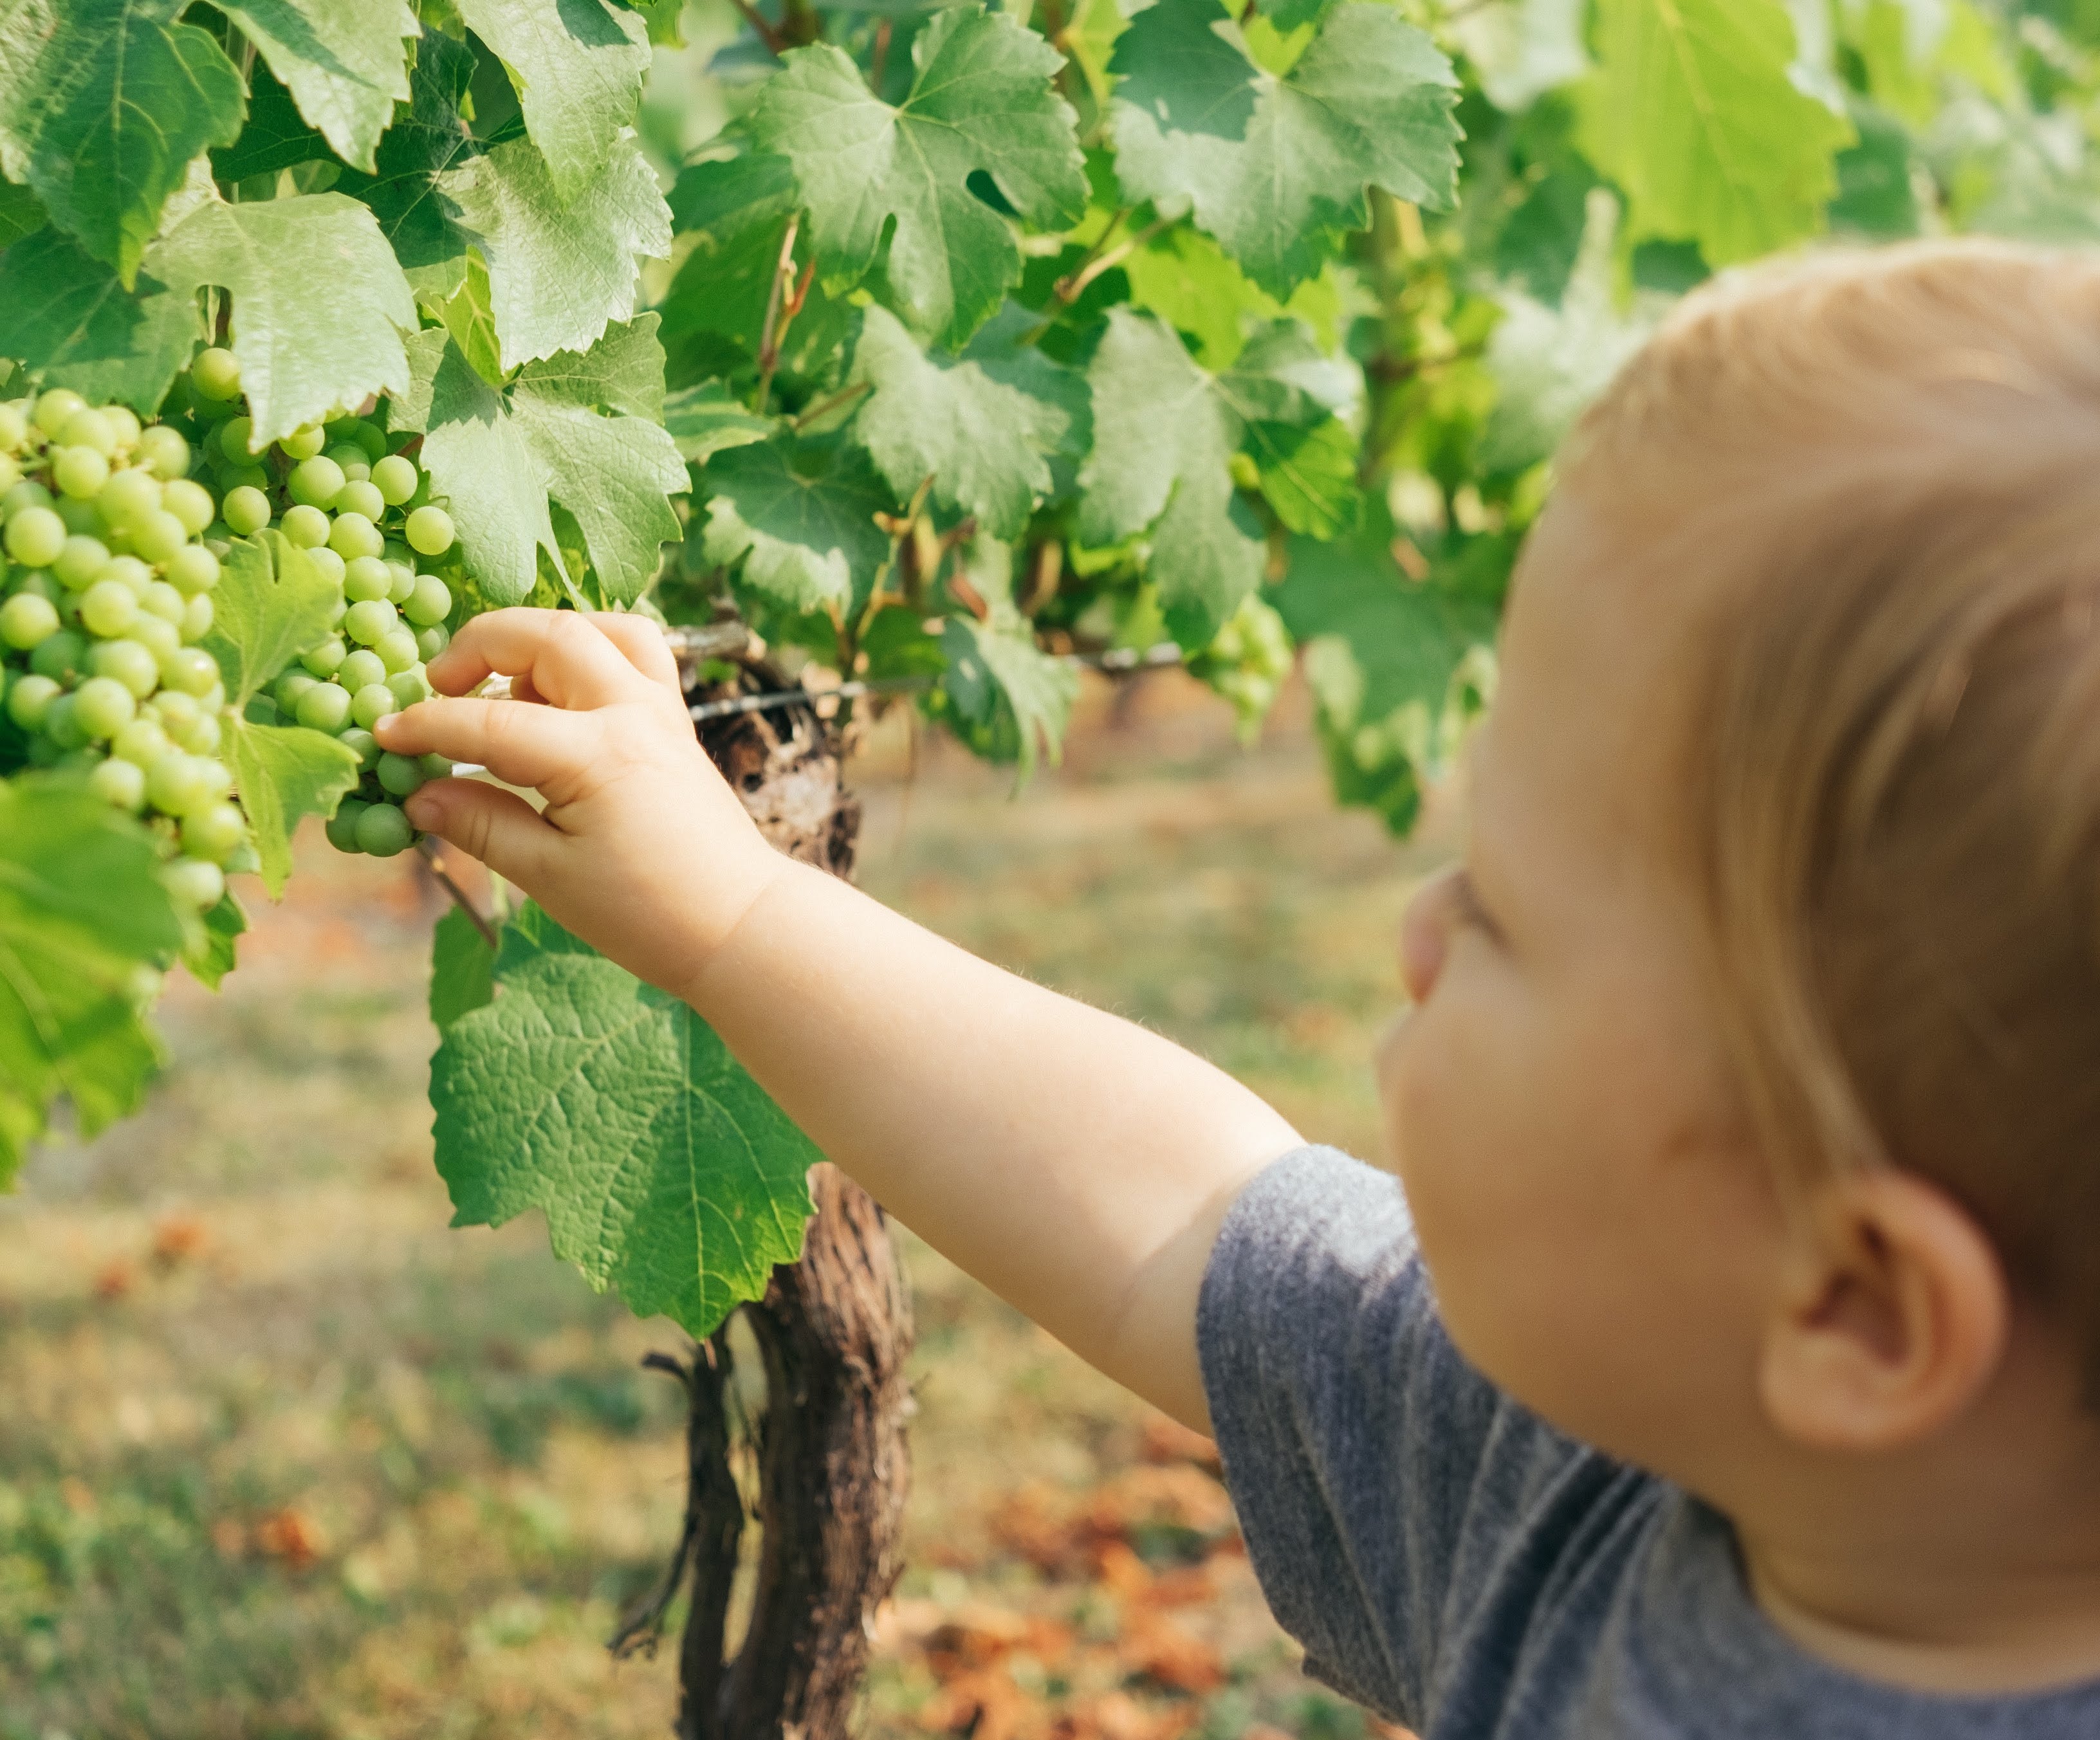 Criança comendo uvas verdes - alimentação saudável infantil